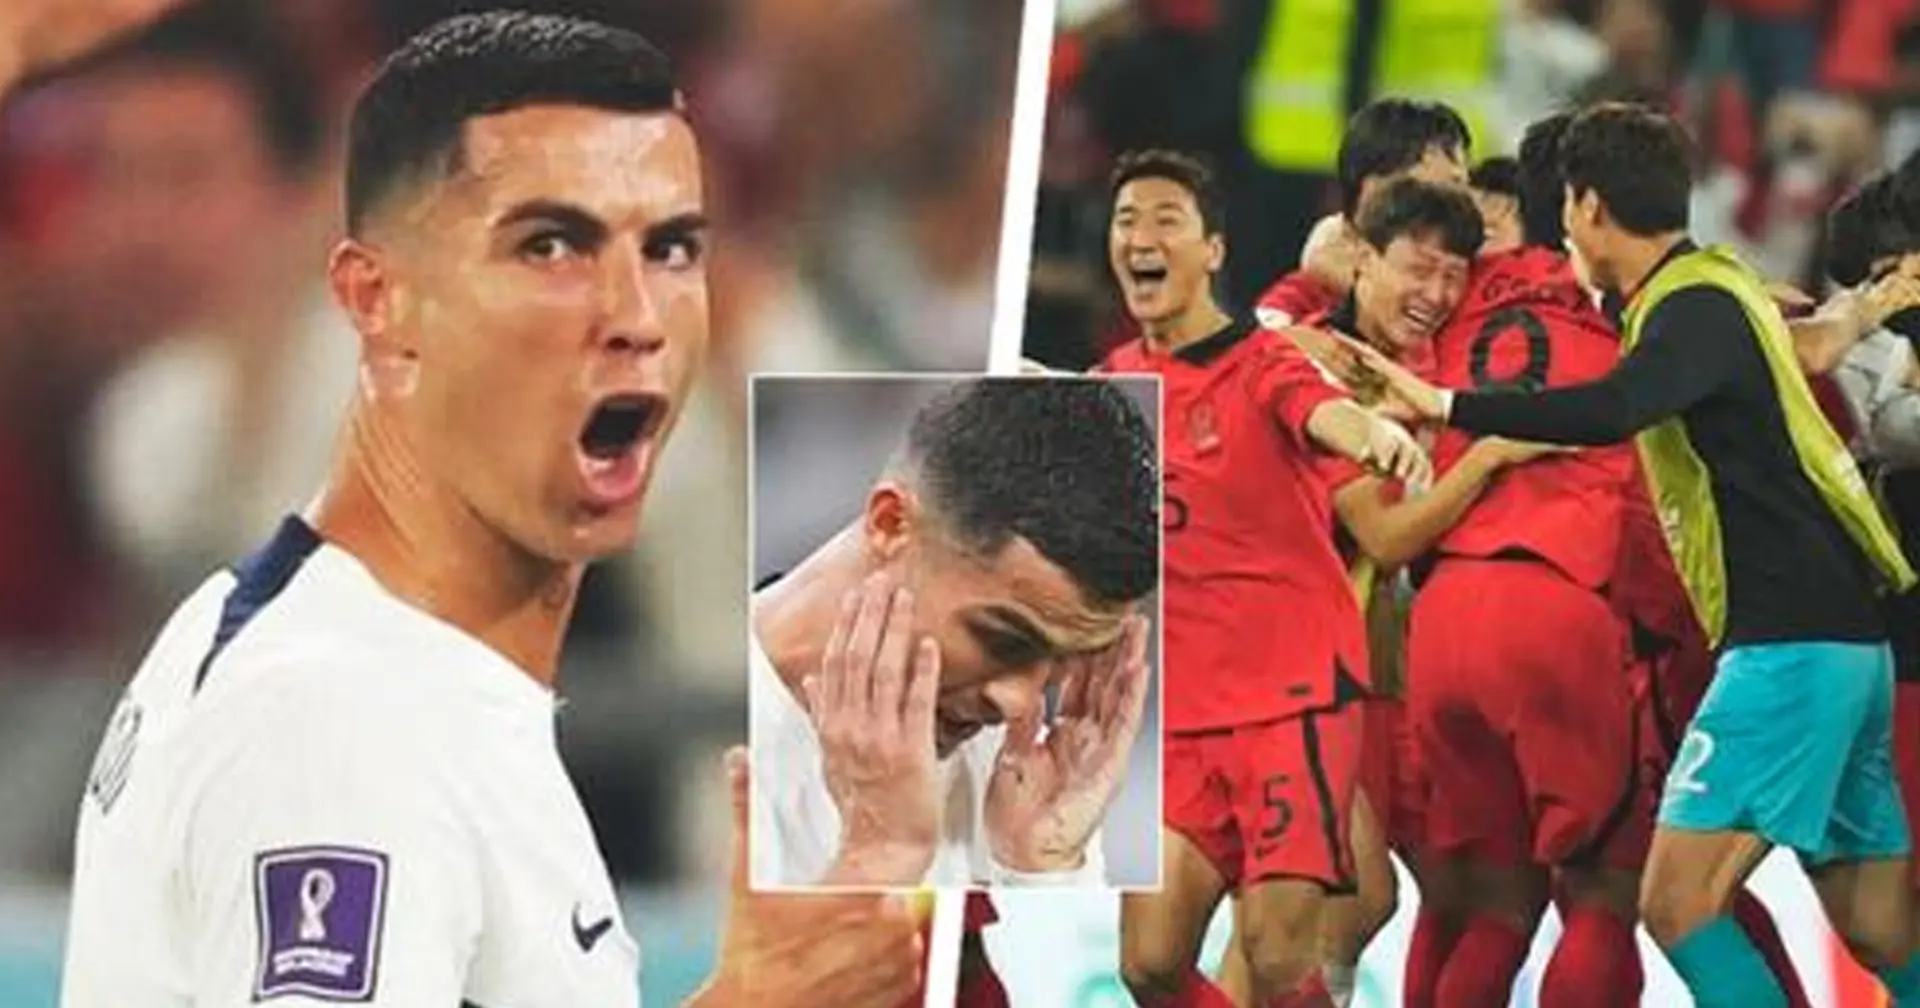 Ronaldo über den Zoff mit Korea-Spieler: "Ich sagte ihm, er solle den Mund halten"